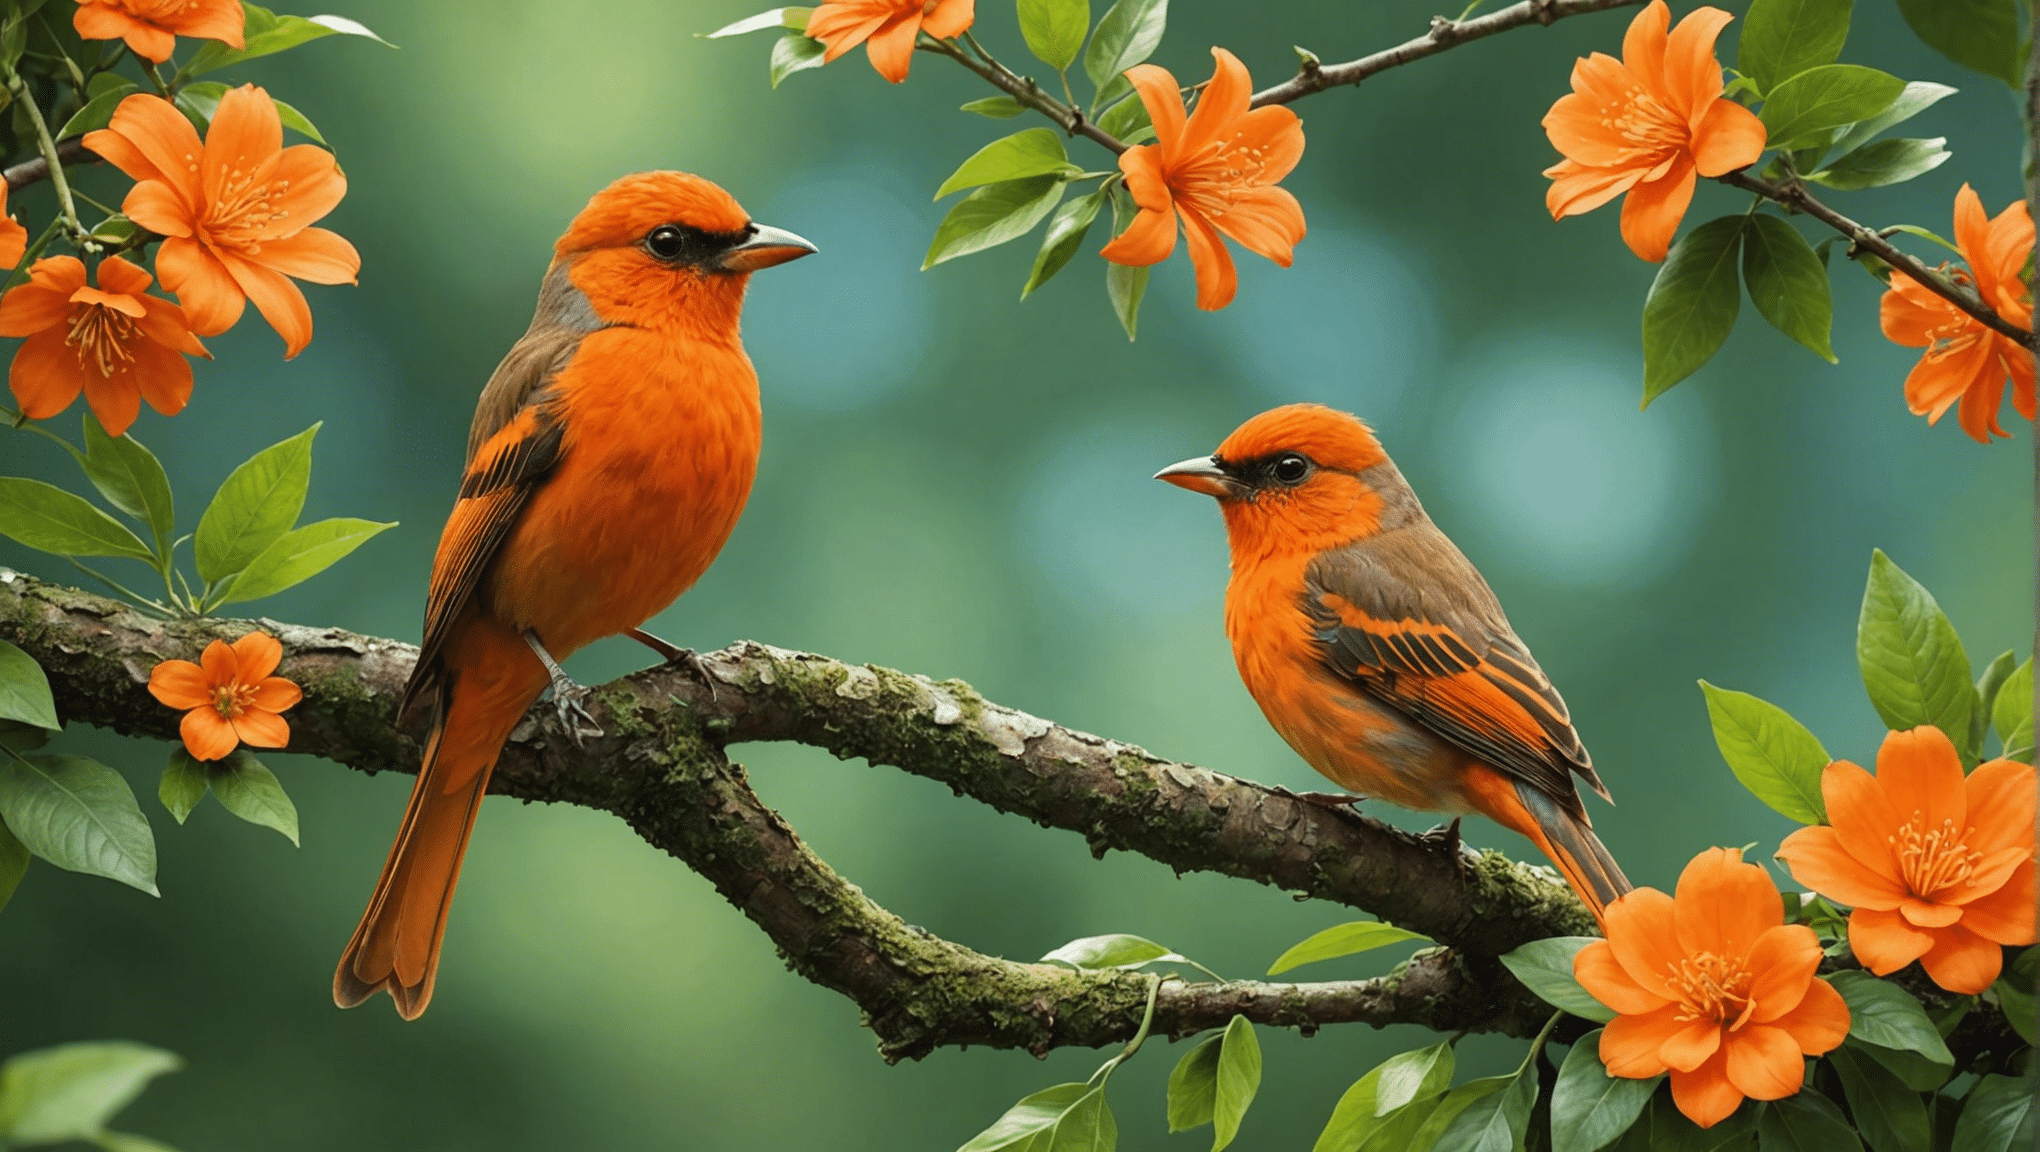 ontdek de waarheid over oranje vogels: zijn ze echt of slechts een mythe? ontdek de feiten en ontdek de realiteit achter het oranje vogelmysterie.